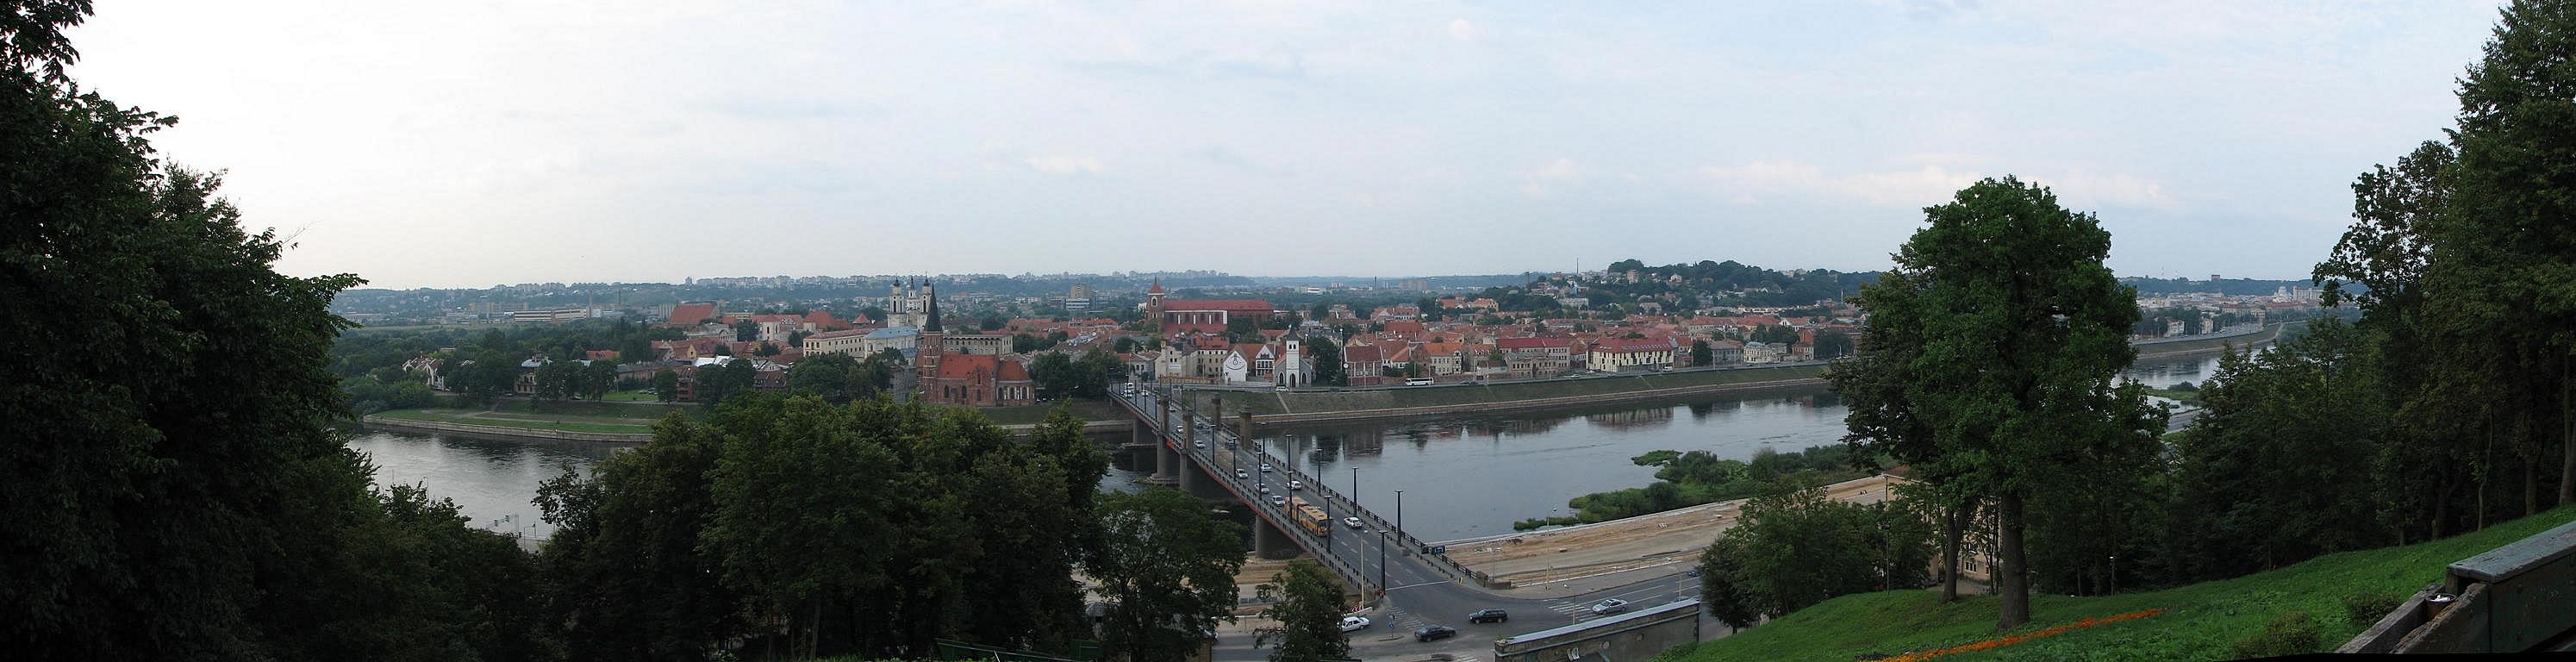 Panorama of Kaunas